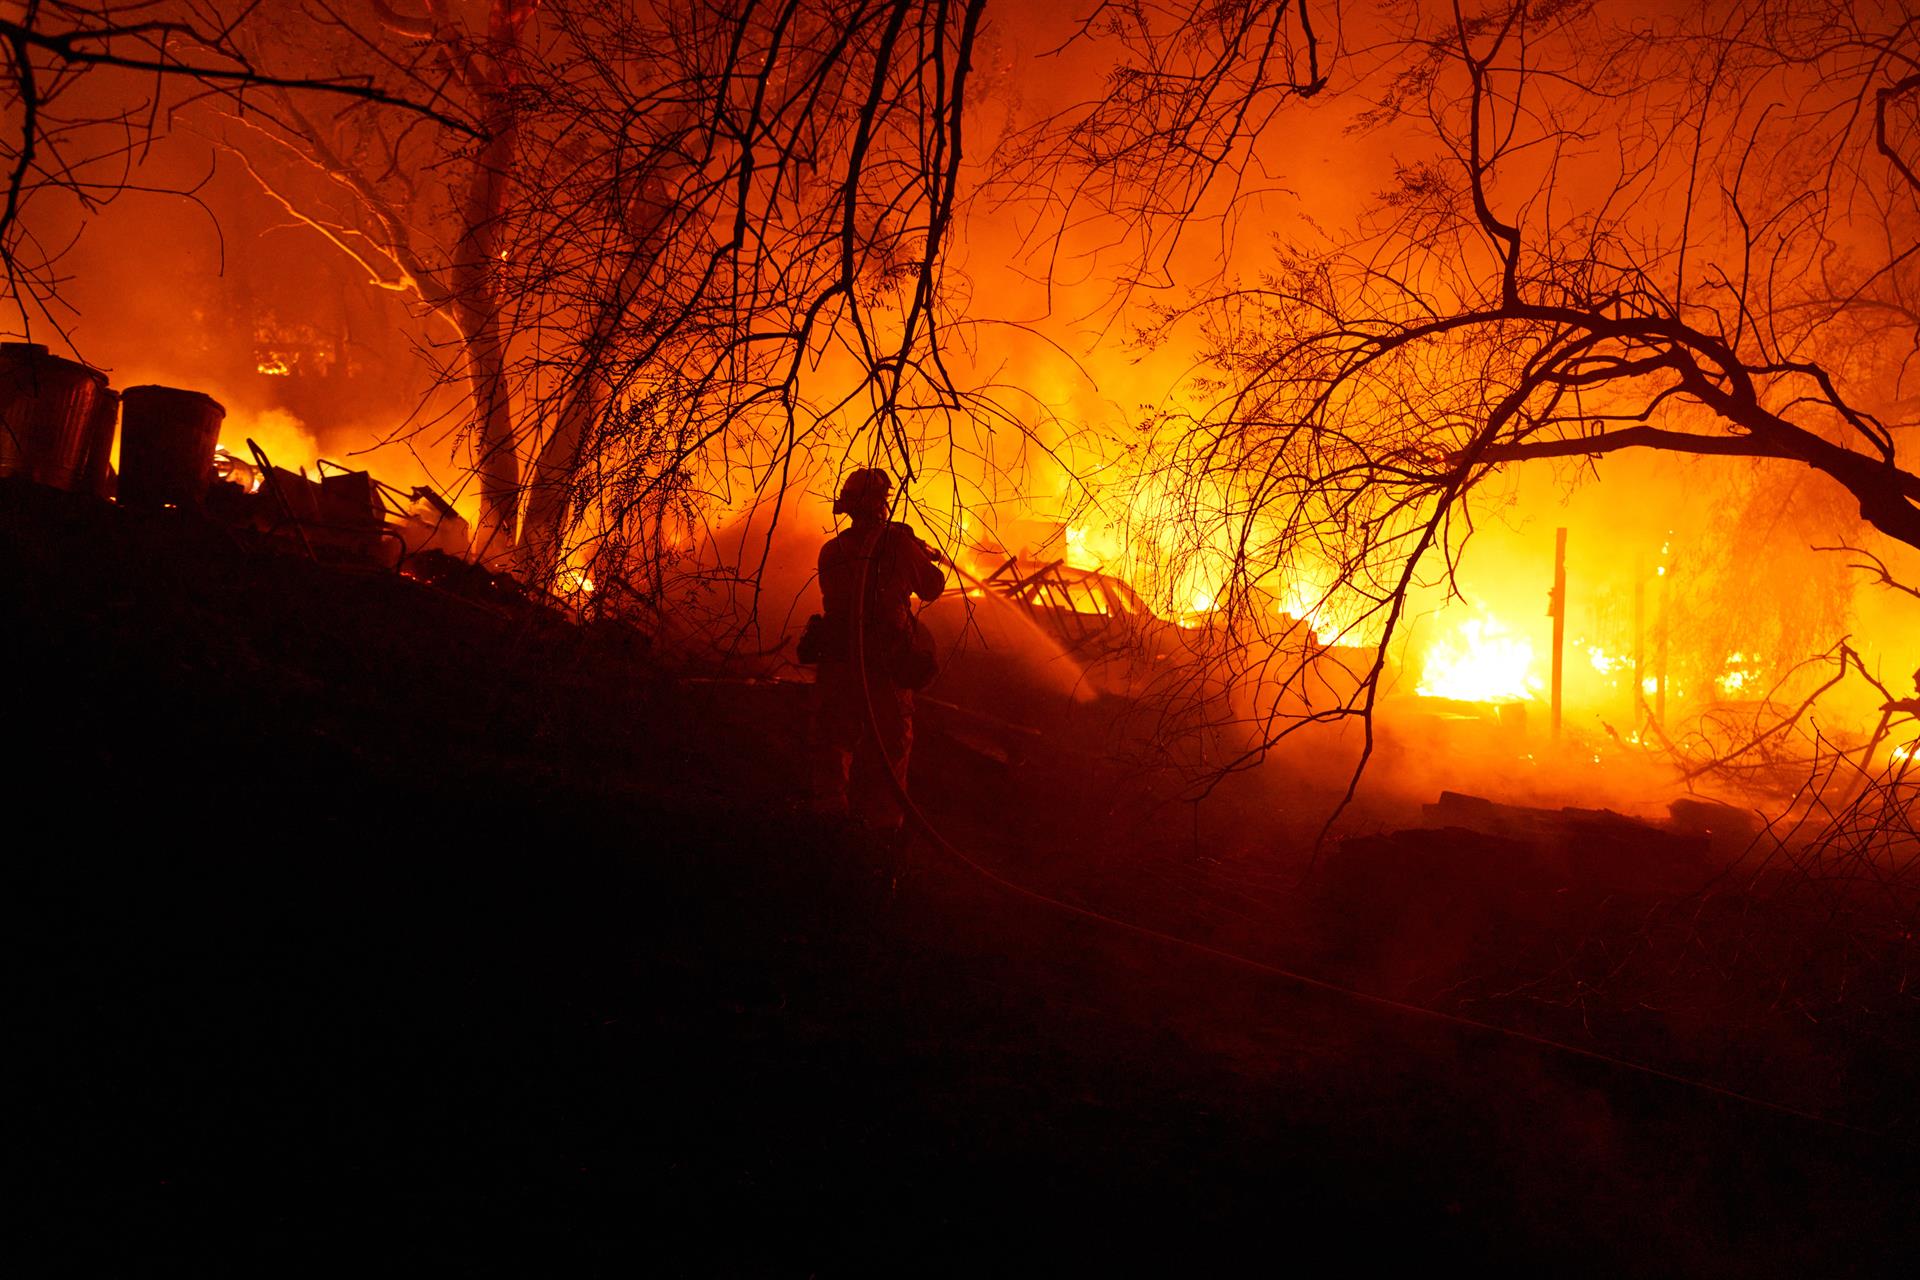 Al menos 4 muertos y decenas de evacuaciones por los incendios en California